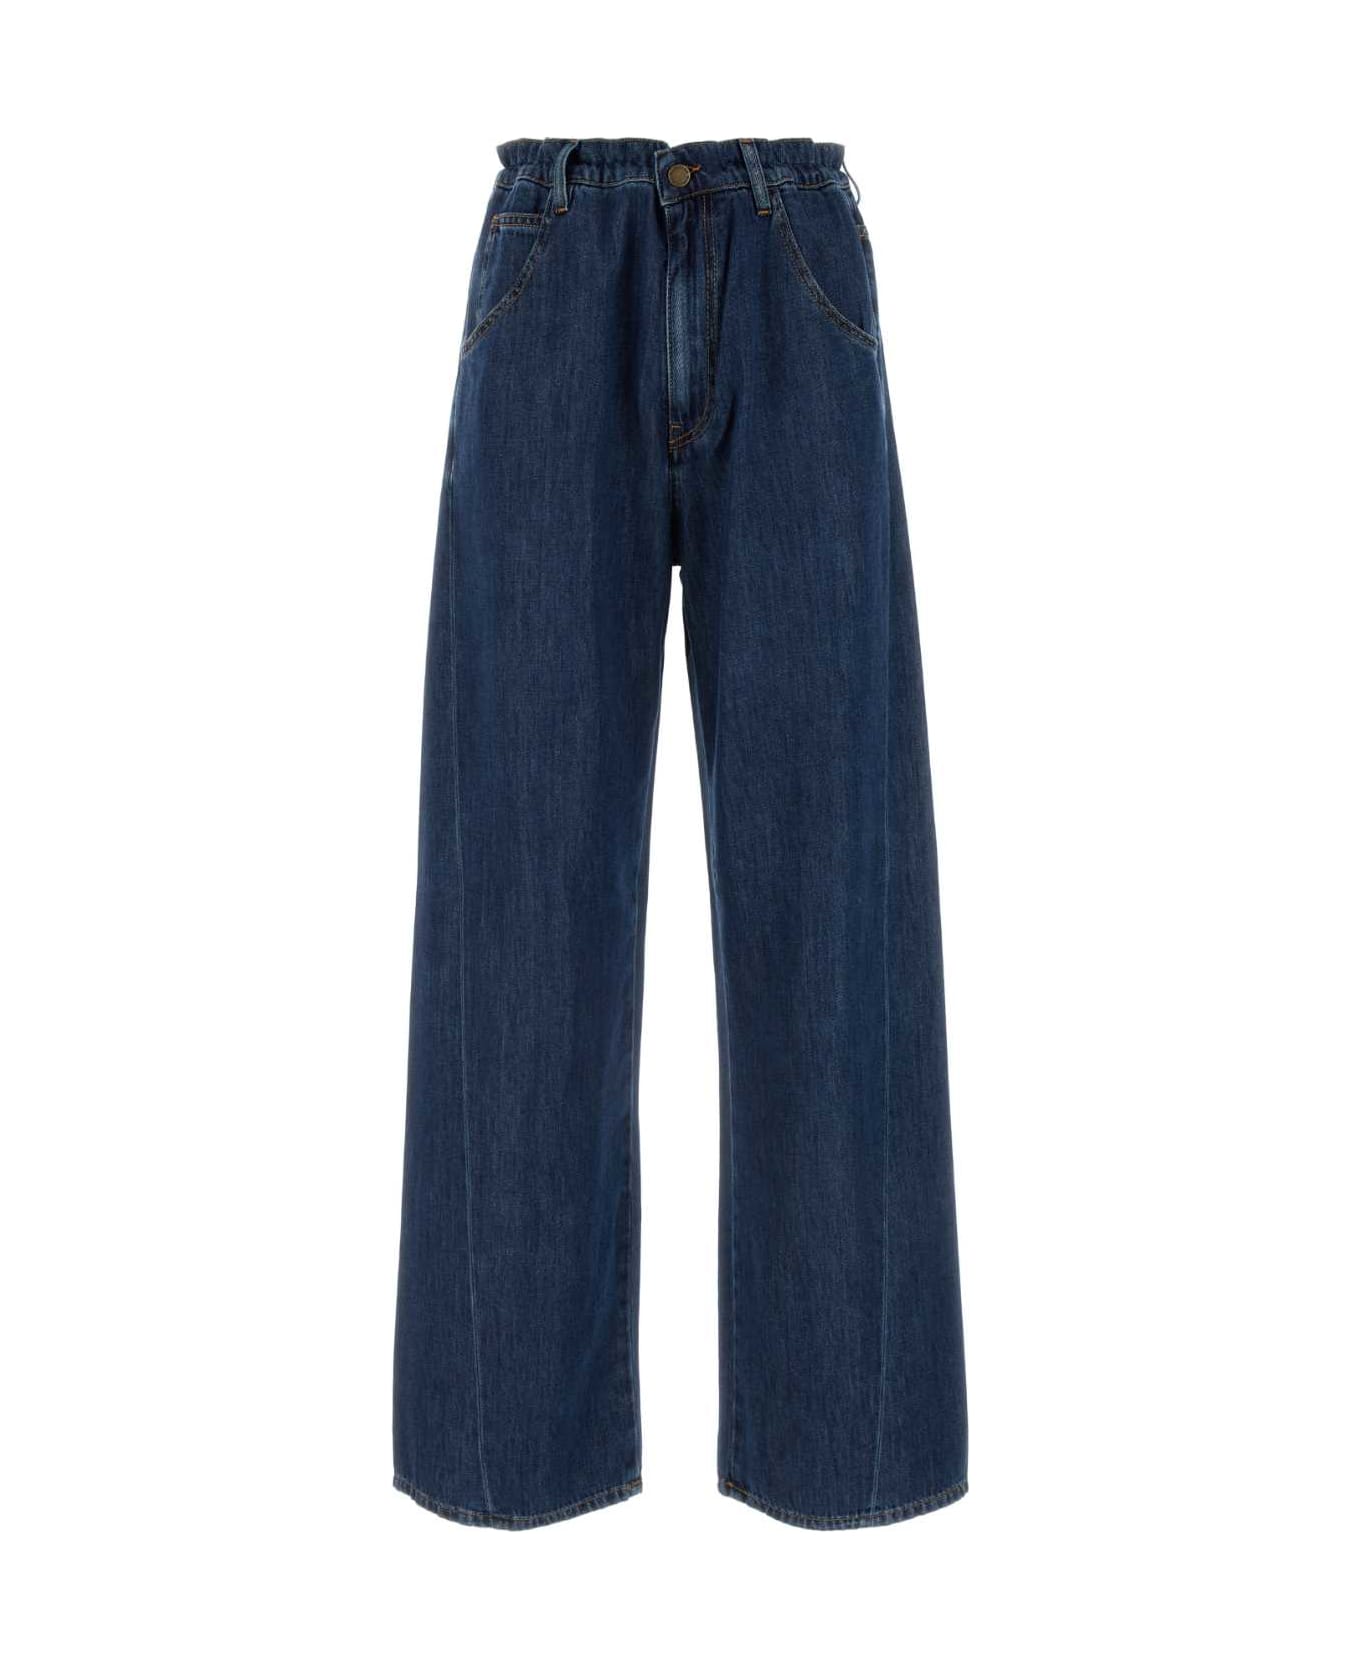 DARKPARK Denim Iris Wide-leg Jeans - MEDIUMWASH